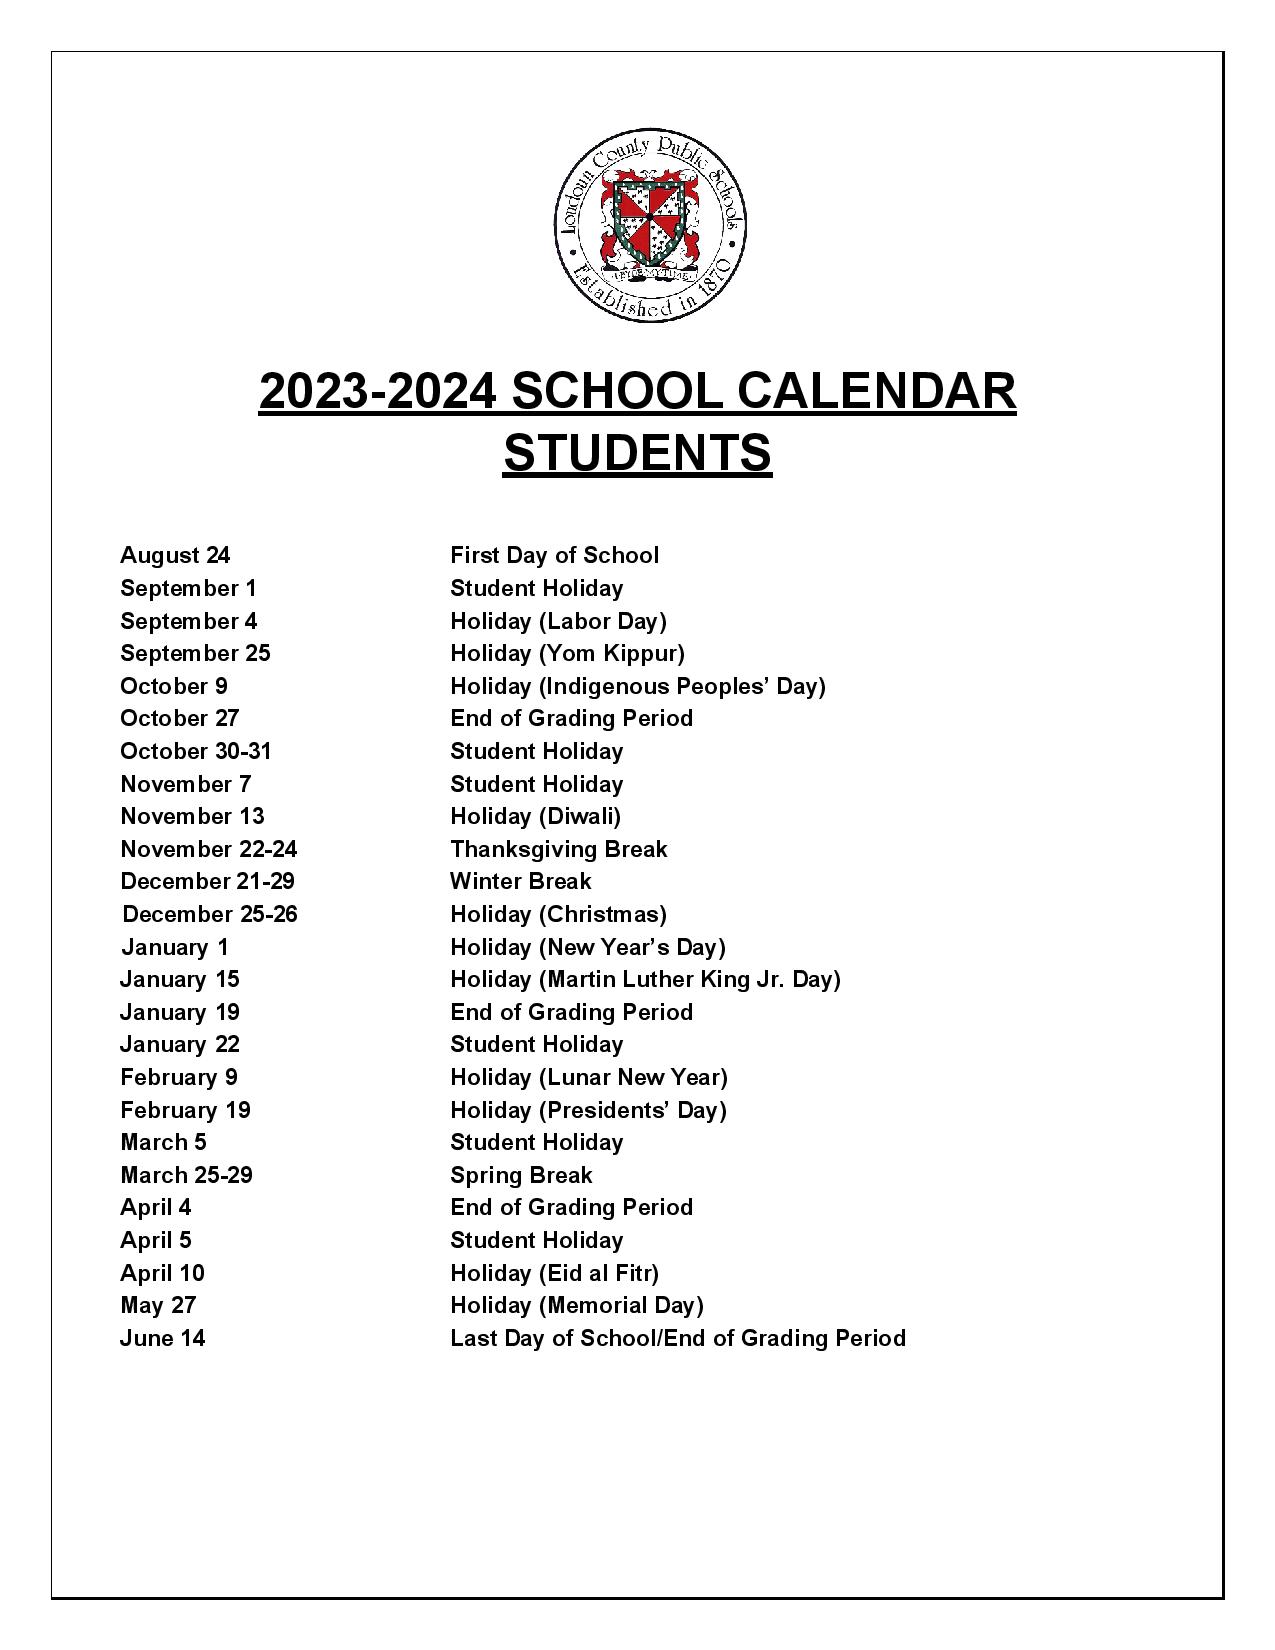 Loudoun County Public Schools Calendar Holidays 2023 2024